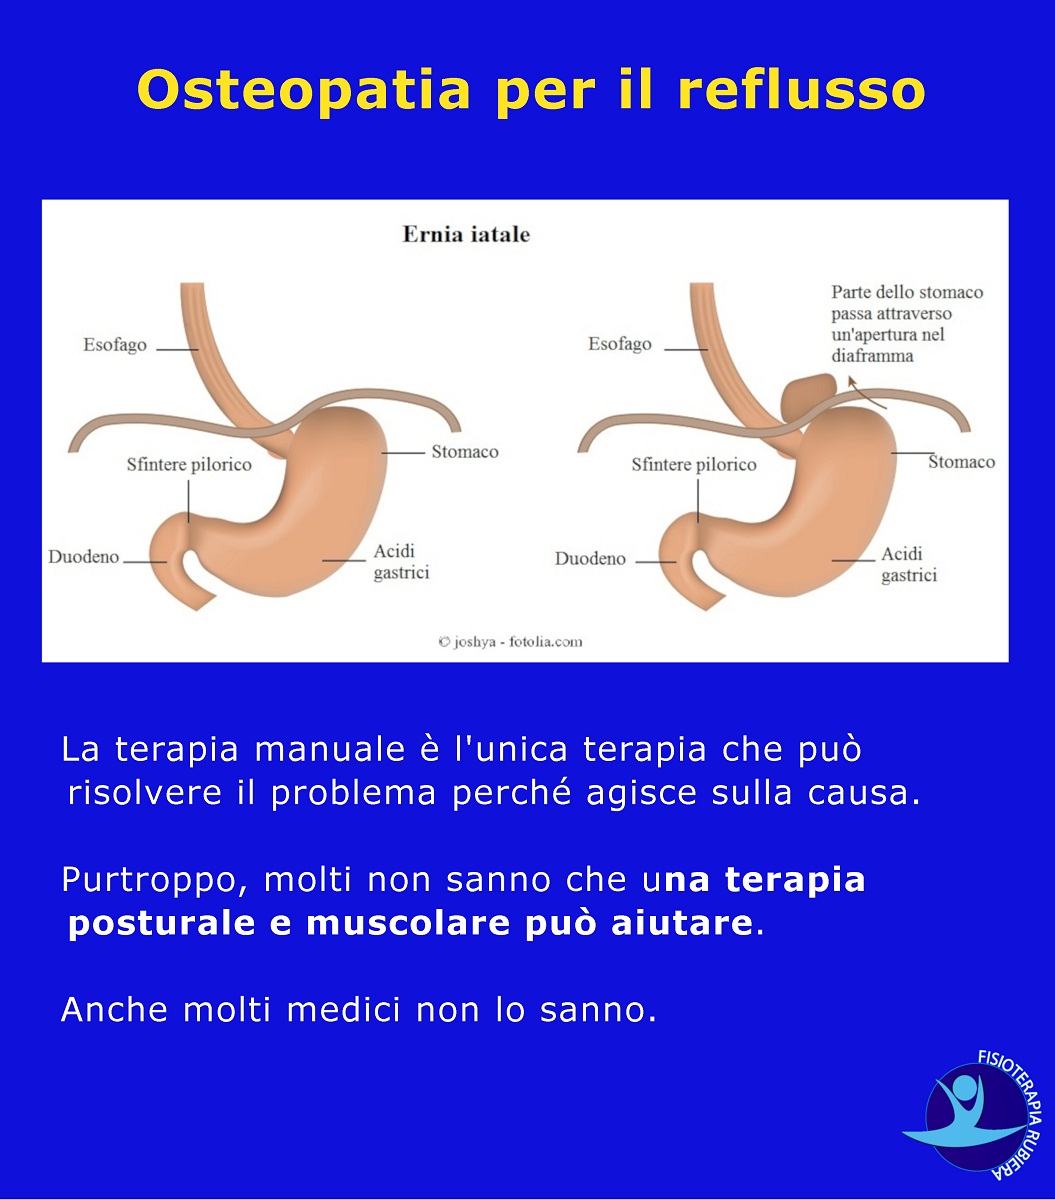 Osteopatia-per-il-reflusso